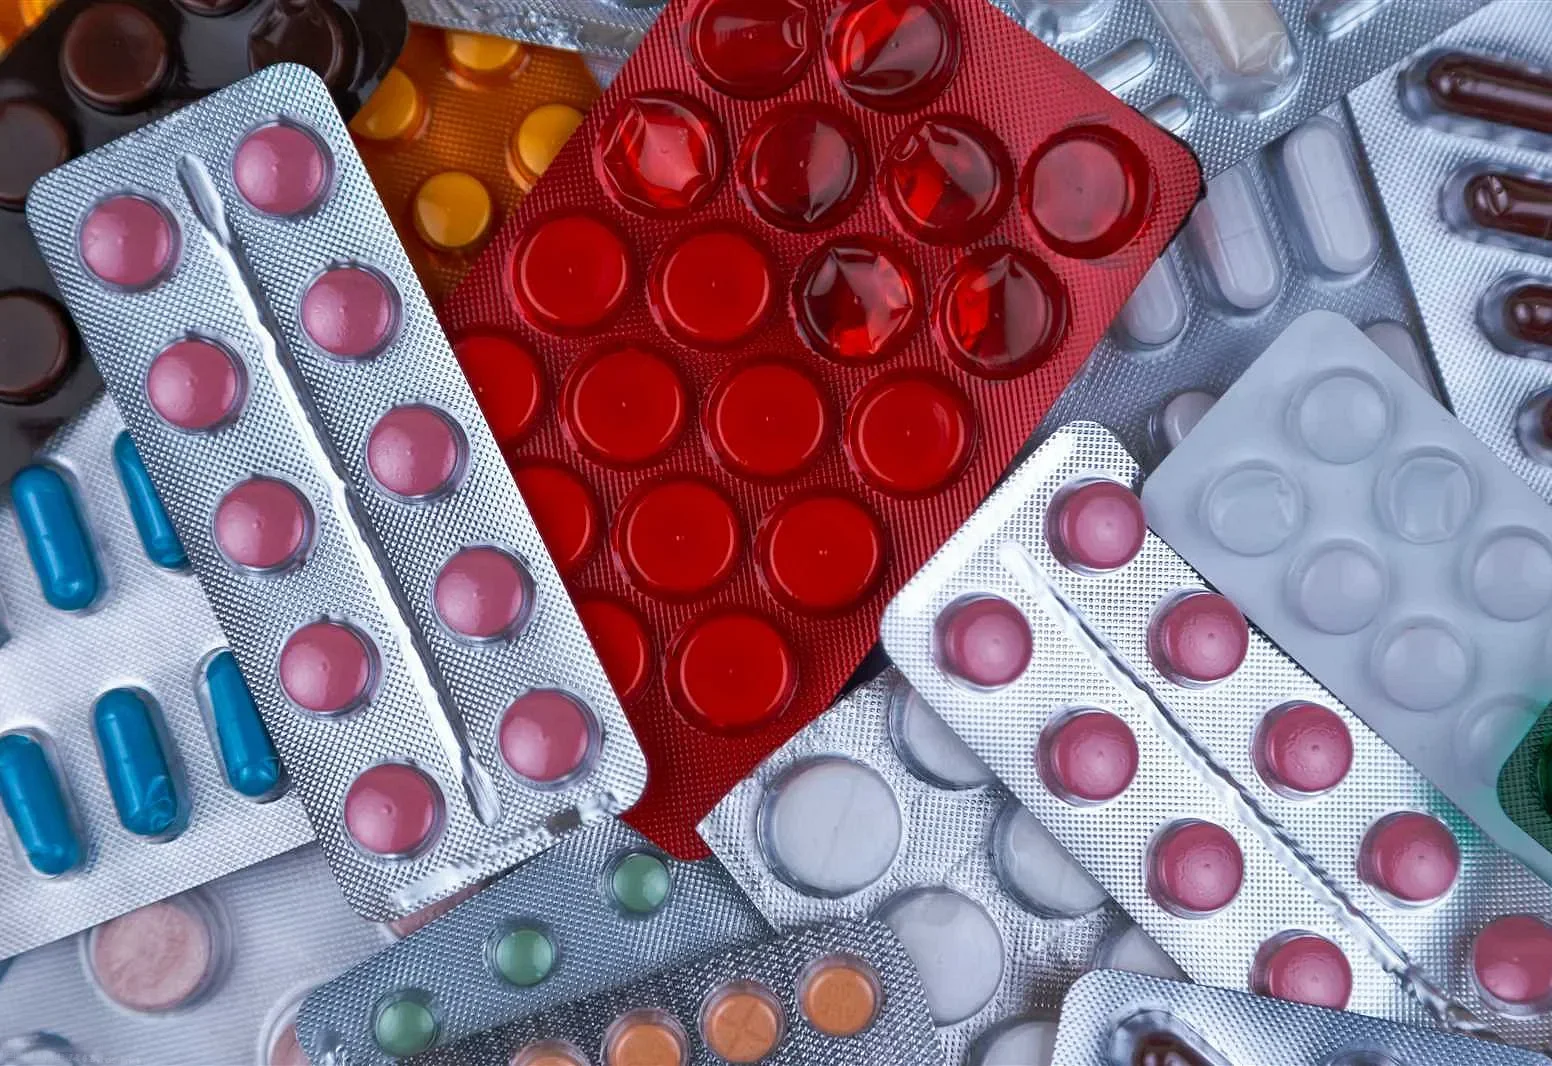 Аспирин или Парацетамол: какой препарат выбрать?